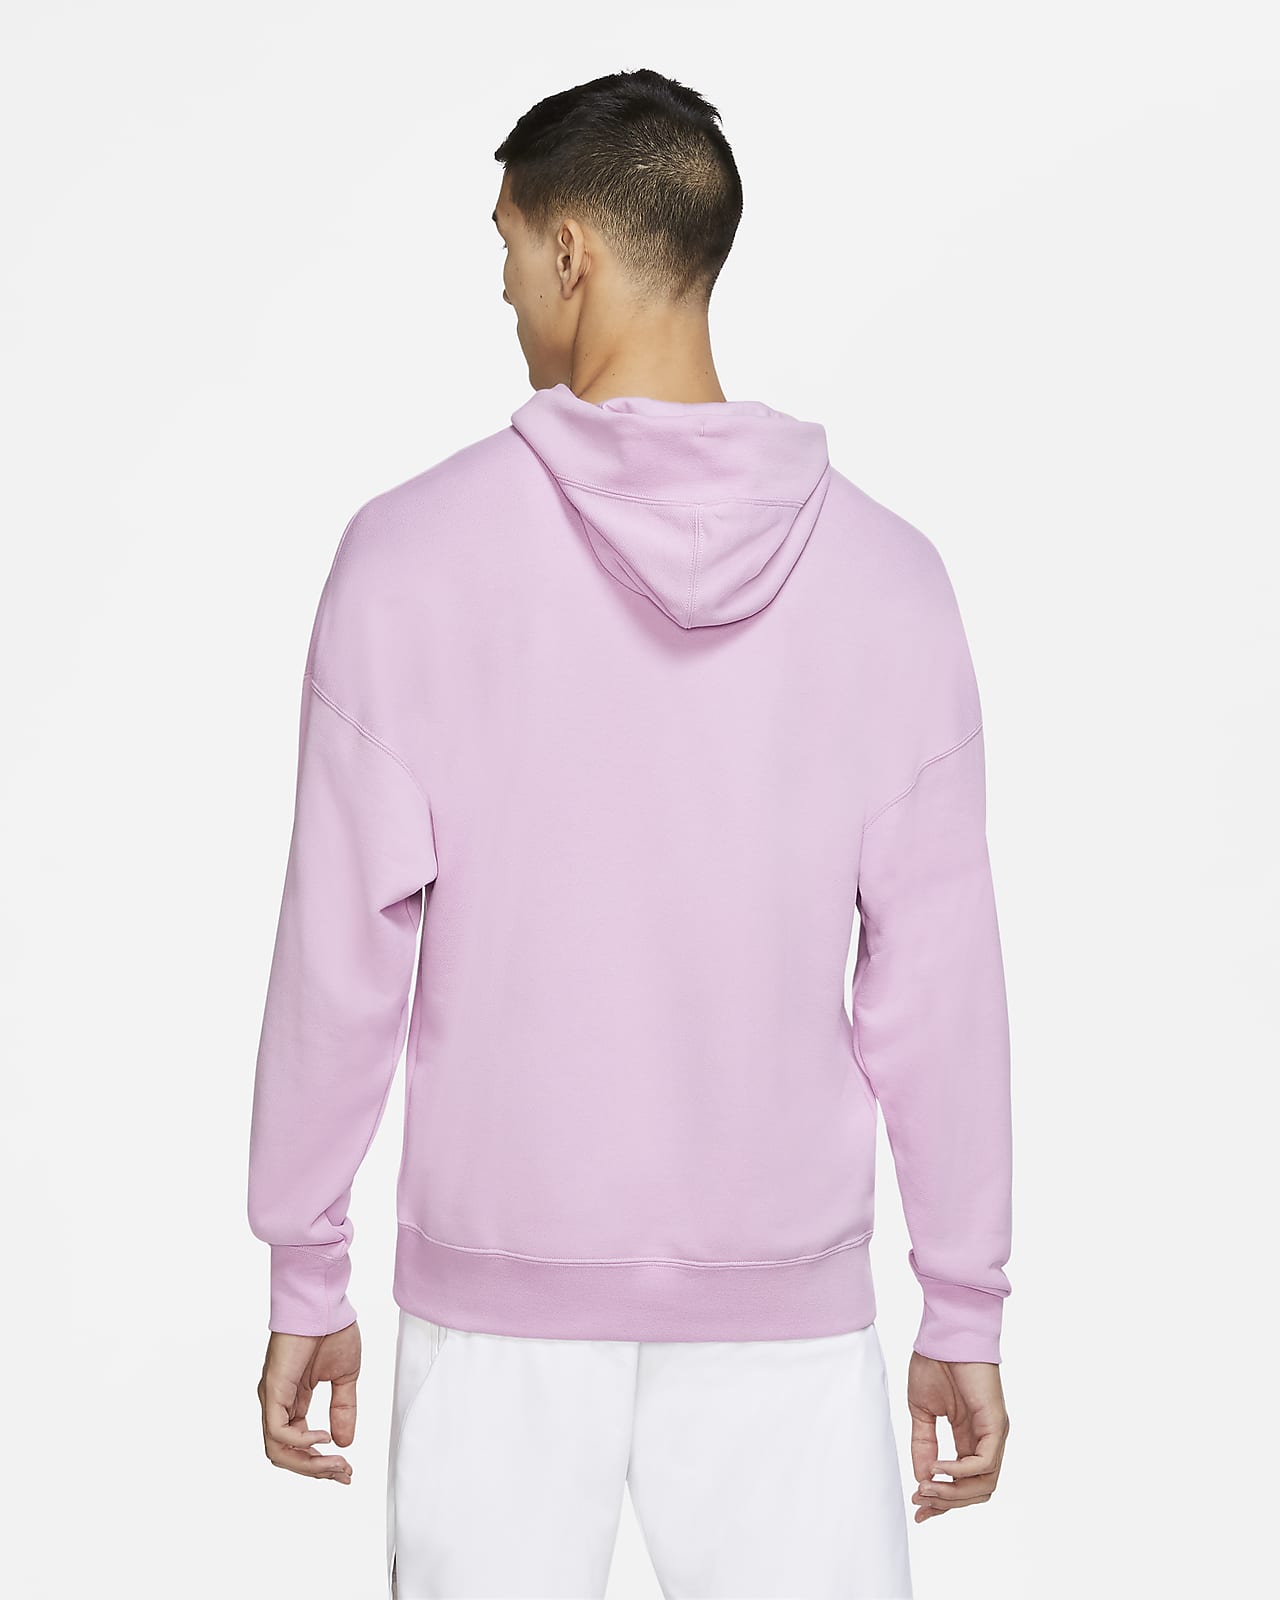 purple and pink nike hoodie